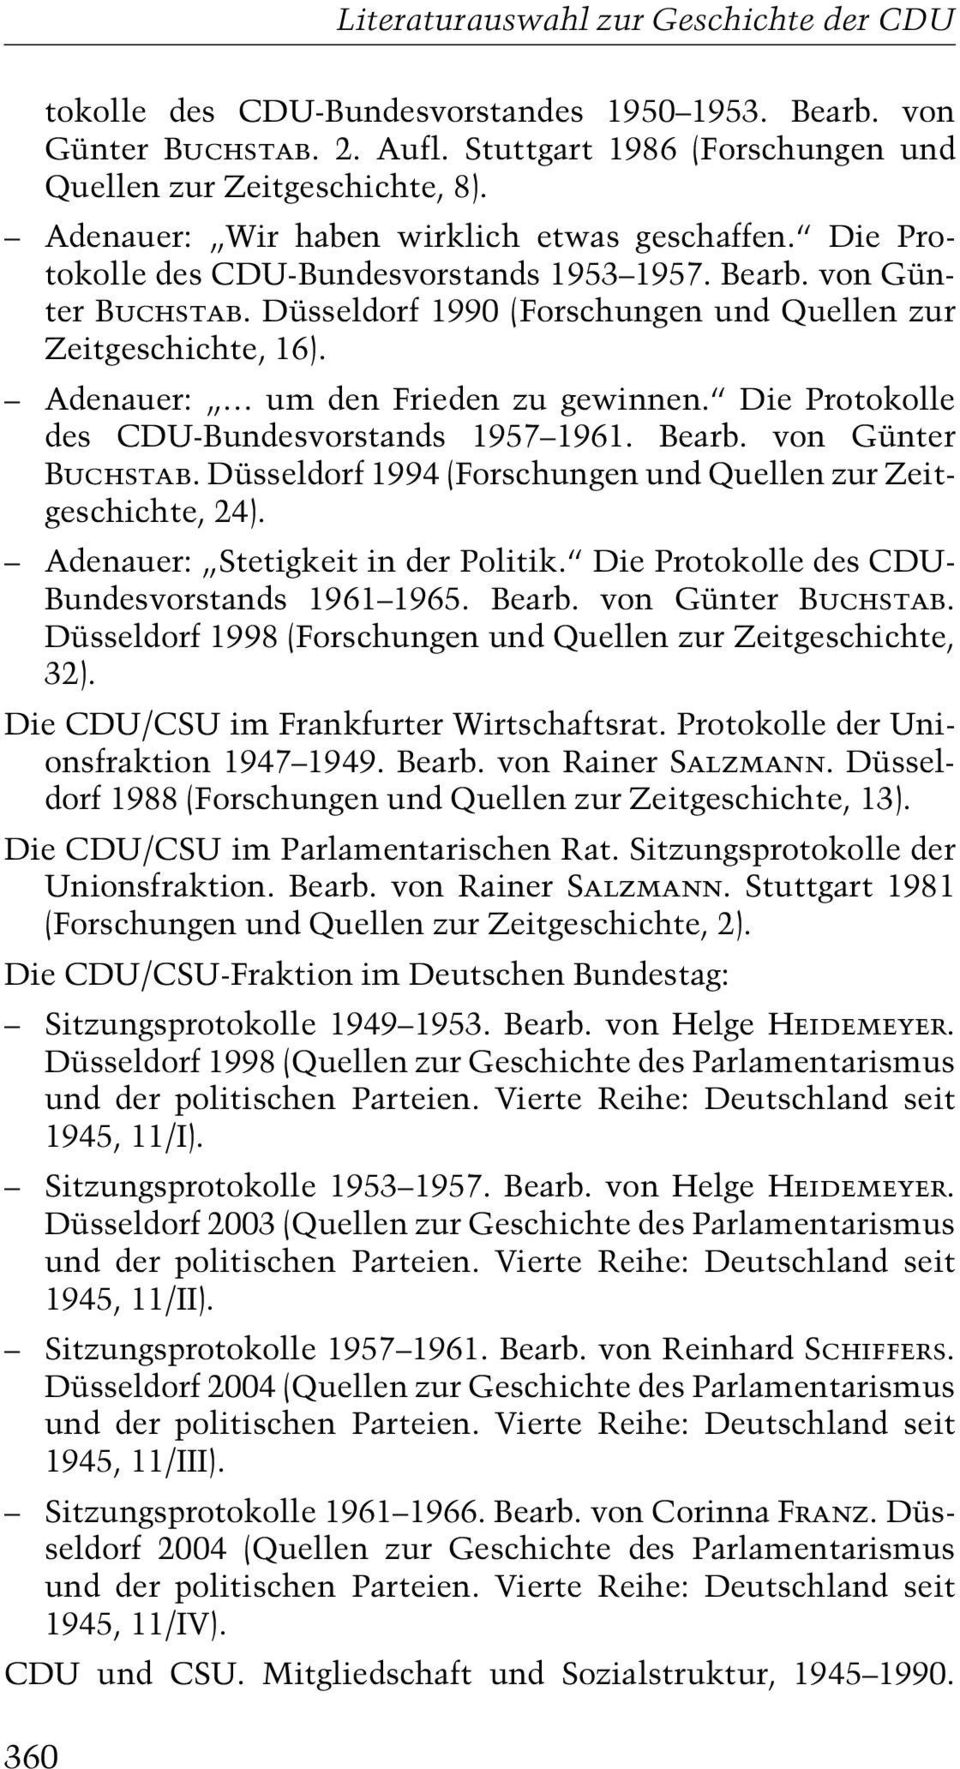 ª Die Protokolle des CDU-Bundesvorstands 1957±1961. Bearb. von Günter Buchstab. Düsseldorf 1994 (Forschungen und Quellen zur Zeitgeschichte, 24). ± Adenauer: ¹Stetigkeit in der Politik.